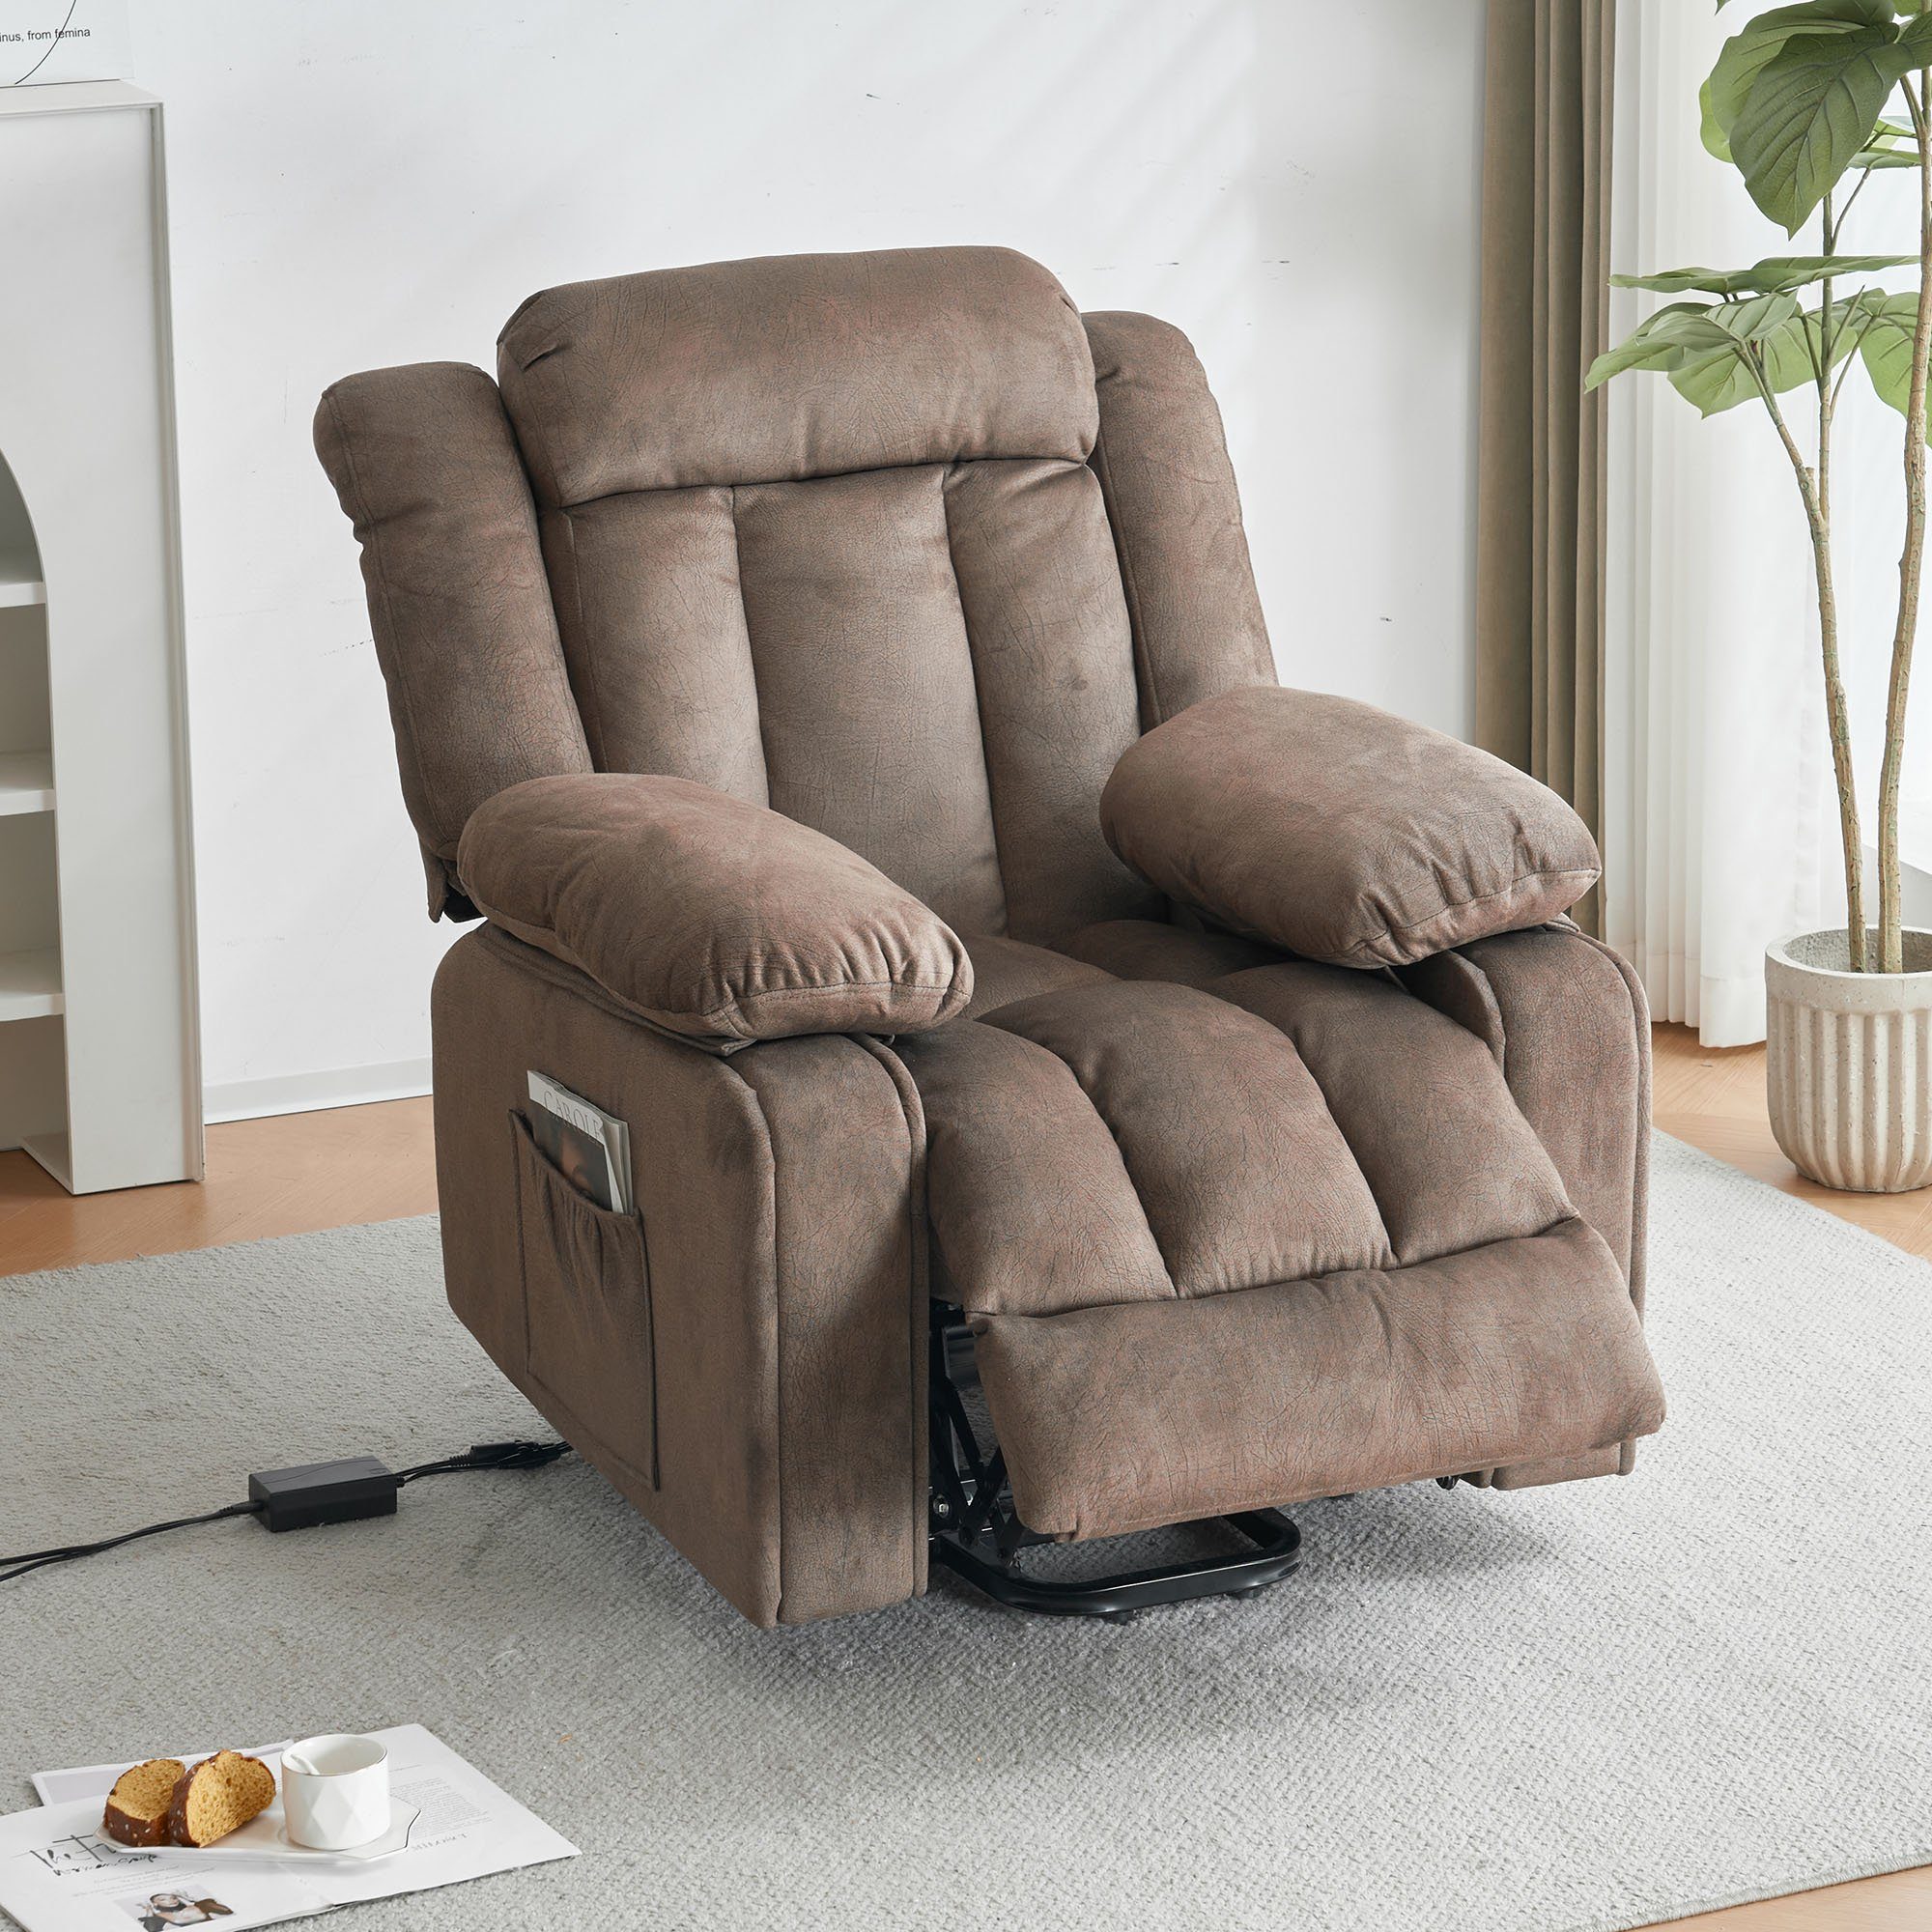 Ulife TV-Sessel Fernsehsessel Elektrisch mit Aufstehhilfe und Liegefunktion, Massagesessel mit Warme und Vibrationsfunktion | Fernsehsessel